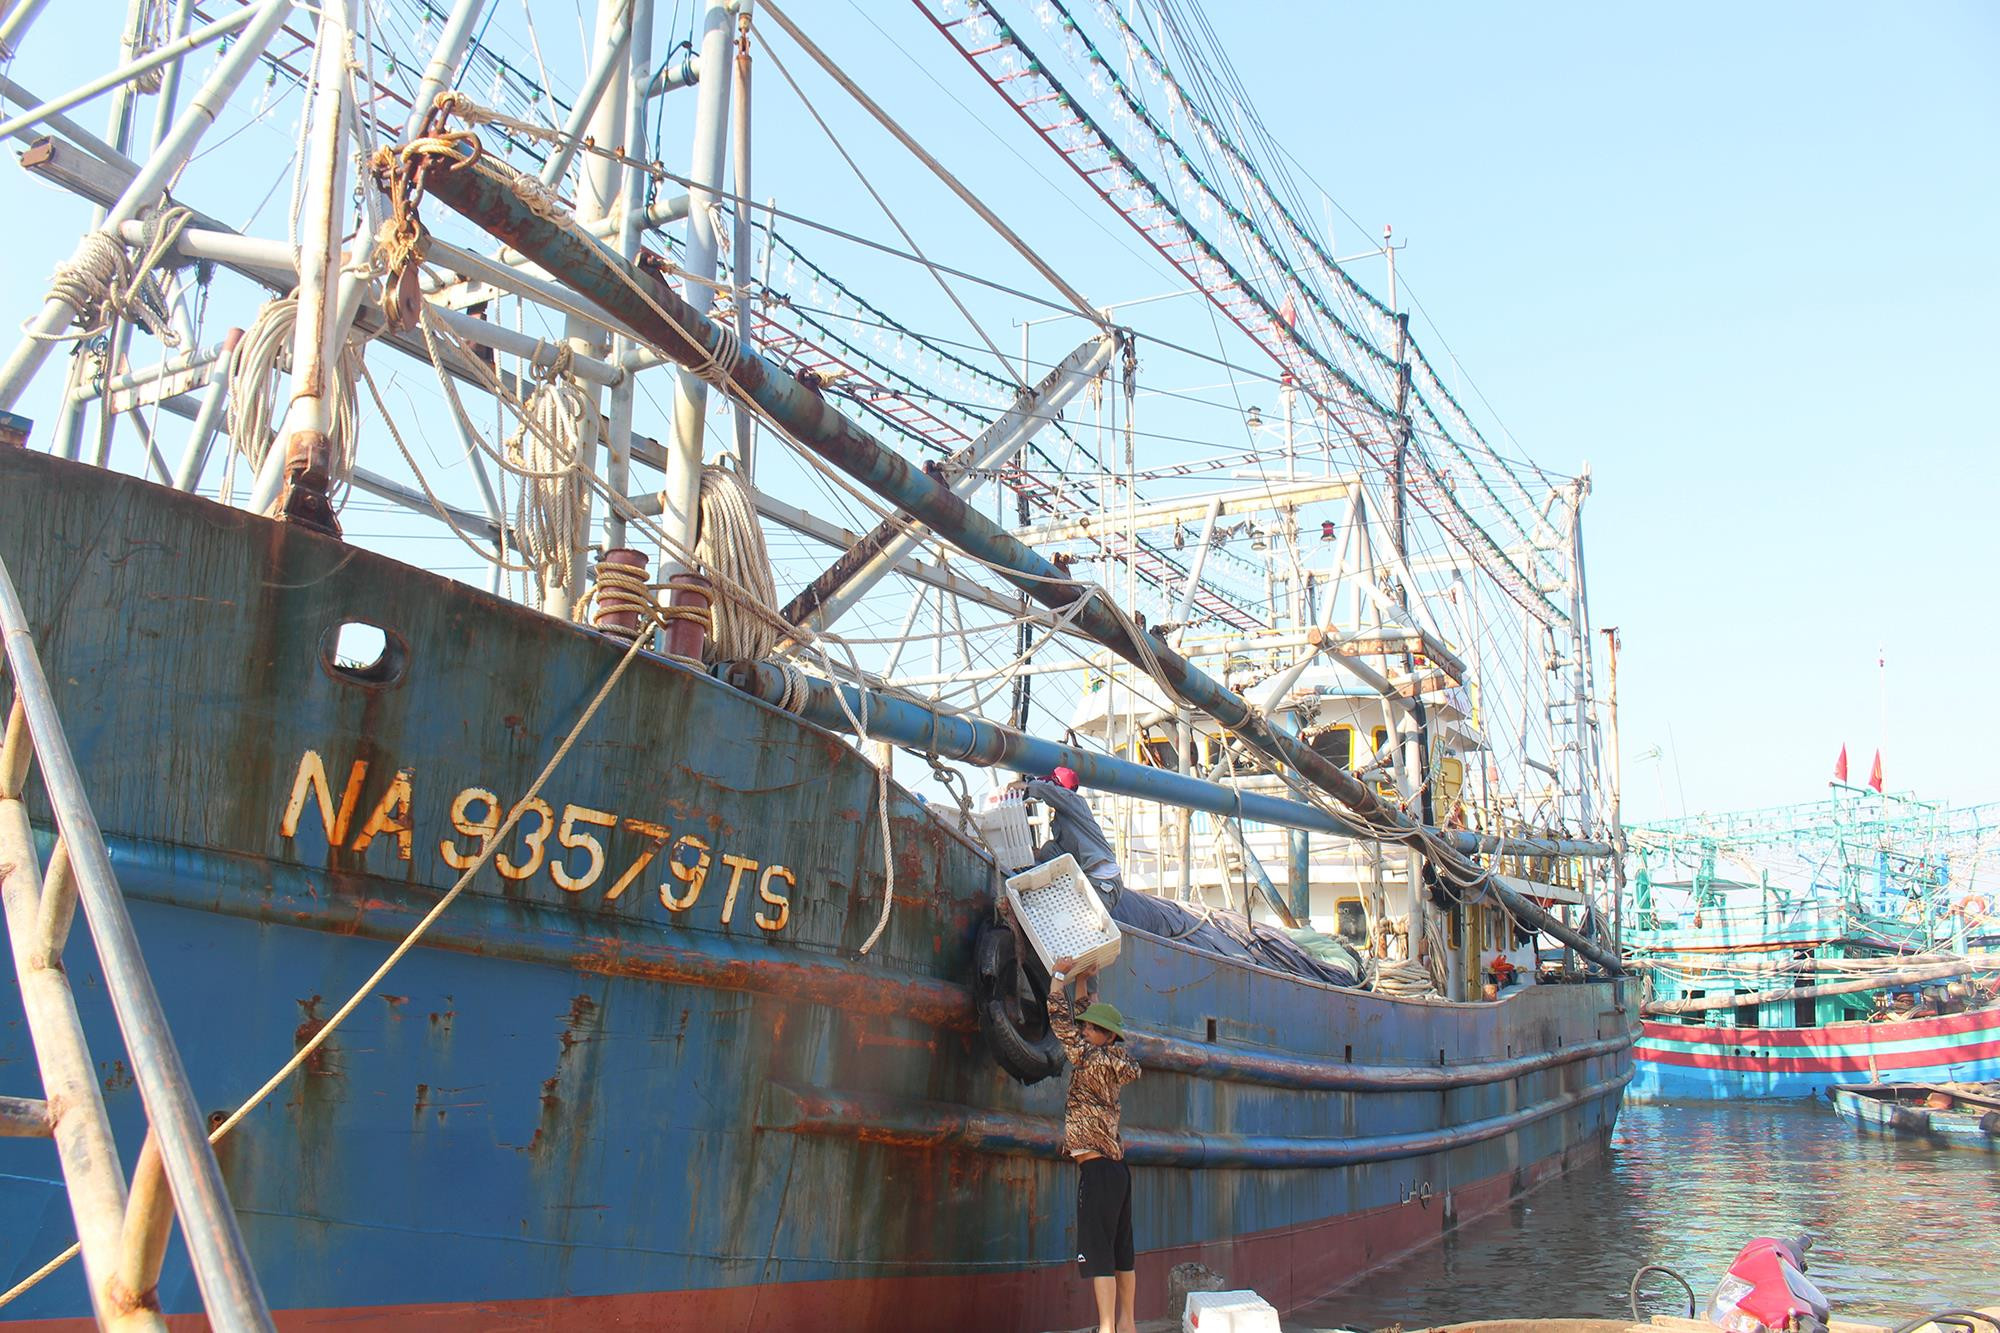 Sau khi tàu được thuê về, ngư dân Quỳnh Lưu (Nghệ An) chuyển đổi nghề và khai thác có hiệu quả trên những con tàu sắt (tàu NĐ 67 của Chính phủ). Ảnh: Việt Hùng